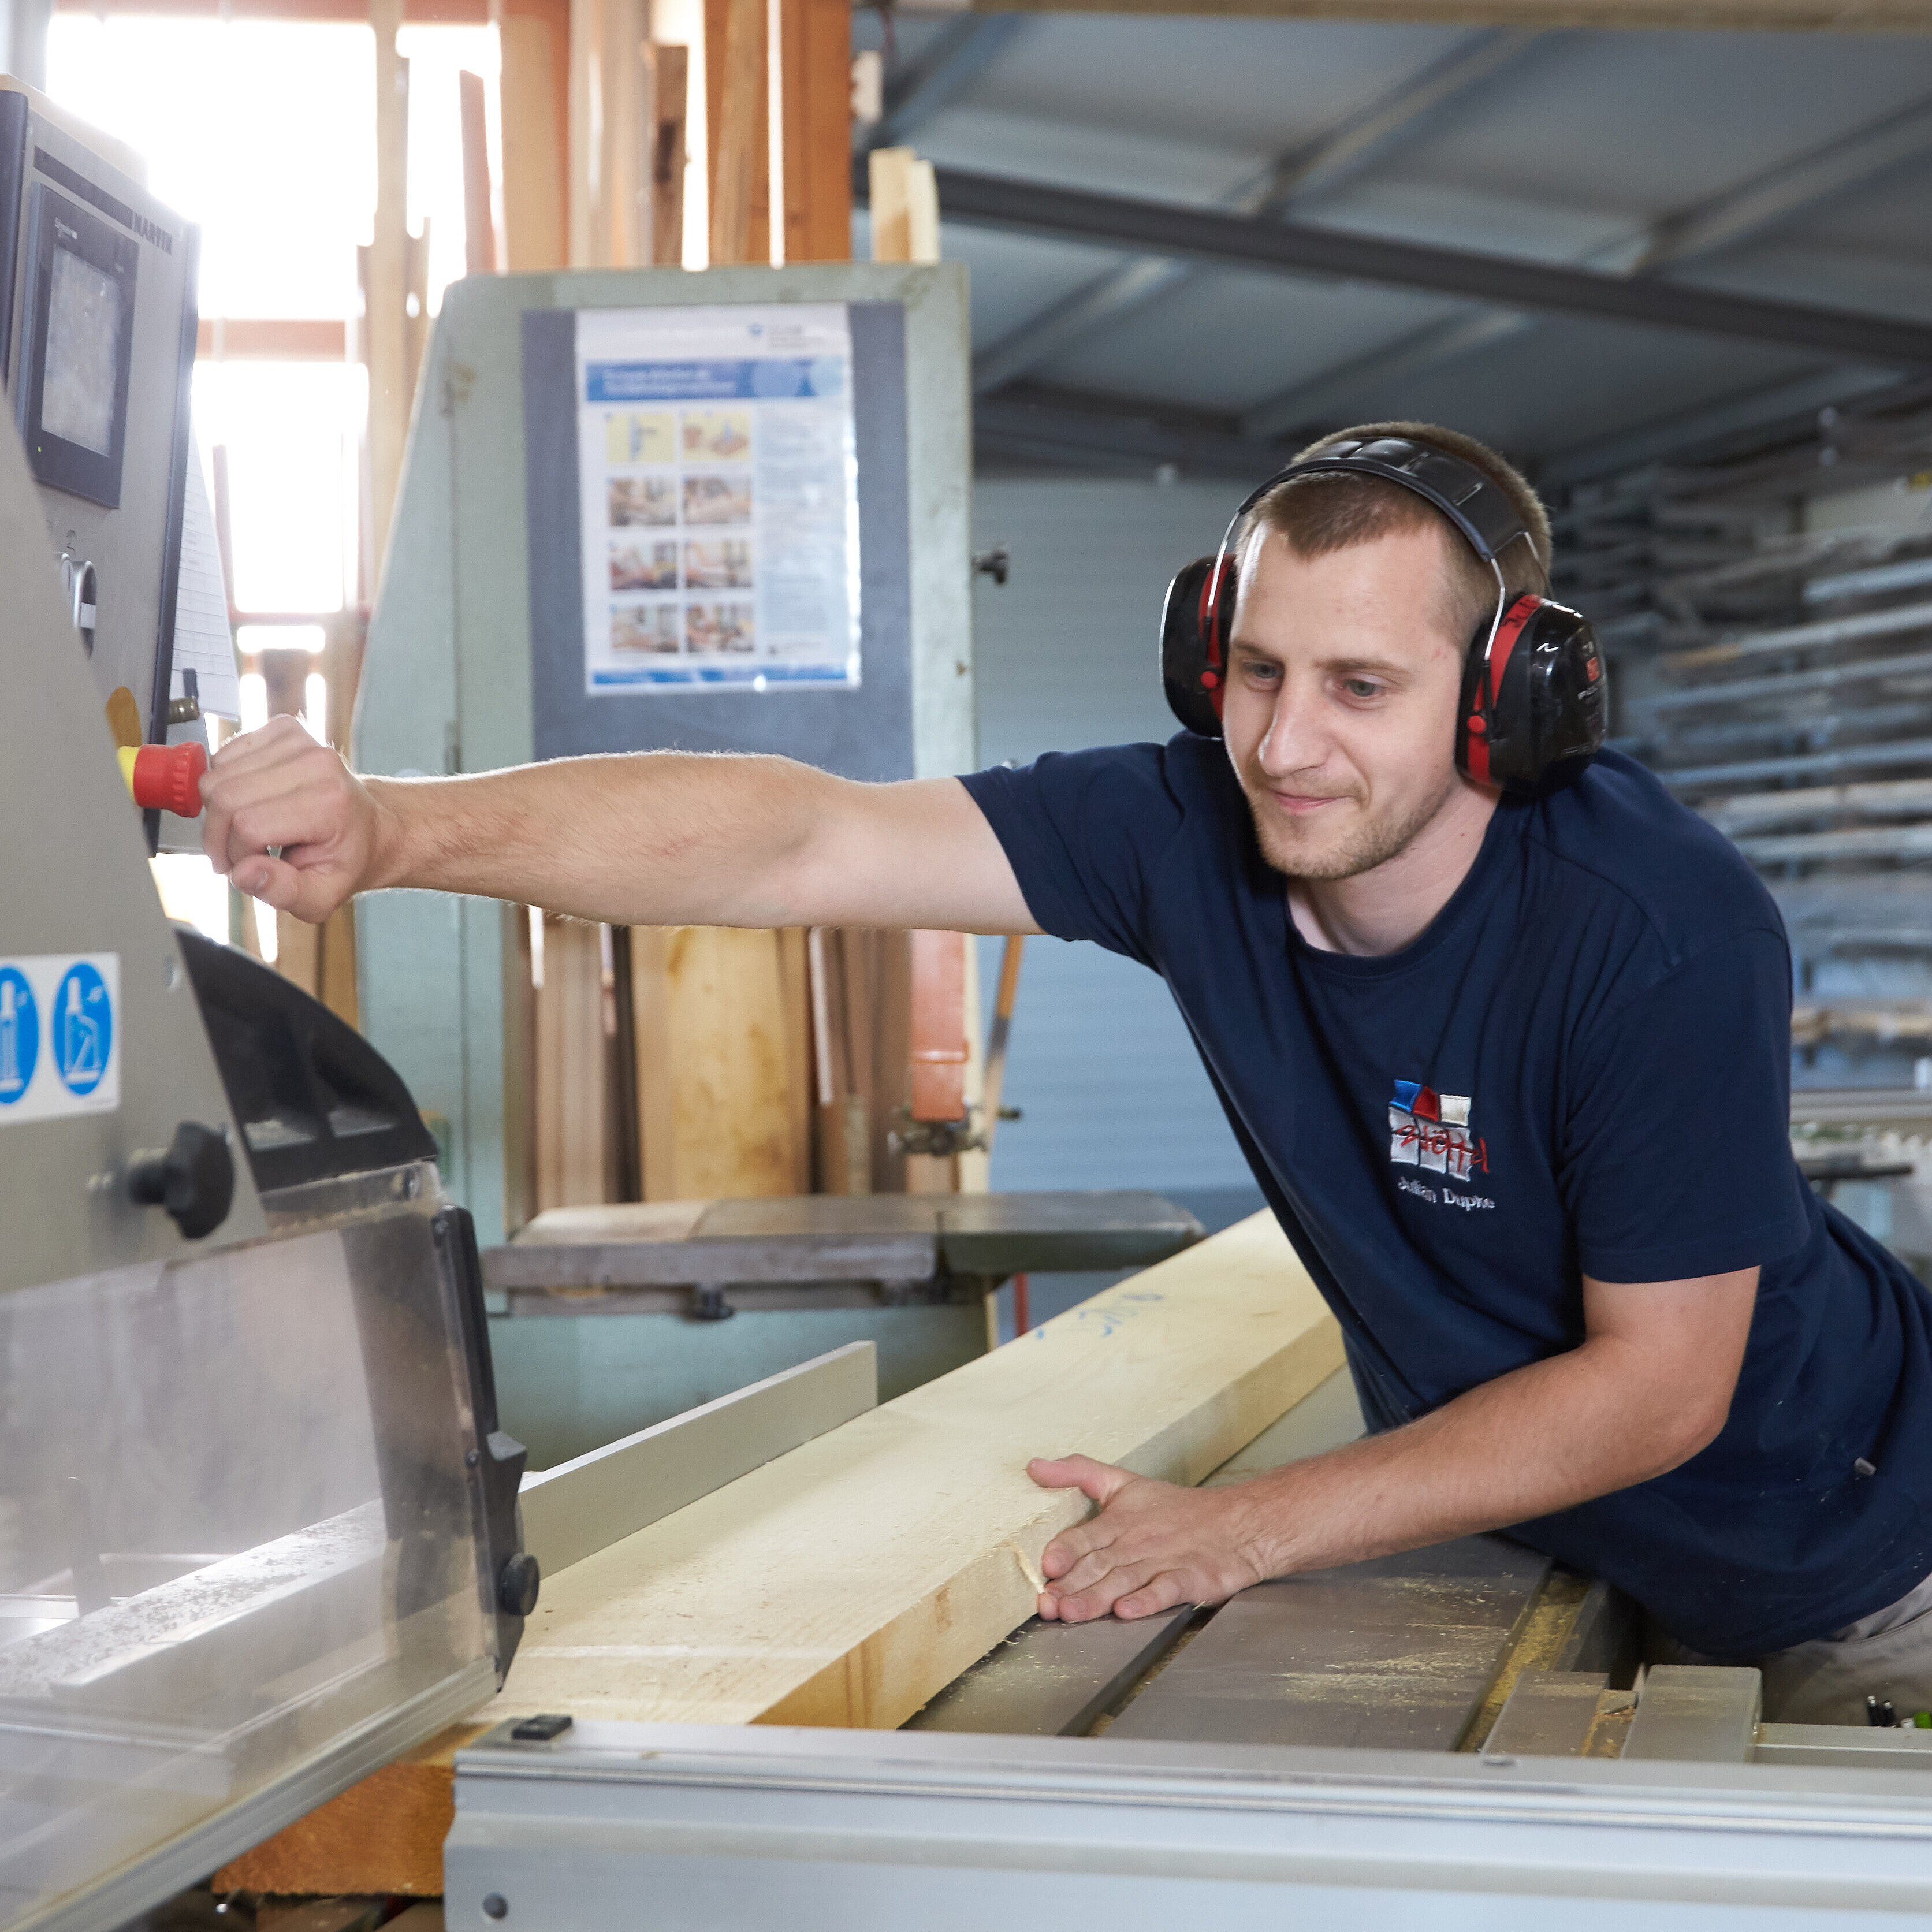 Mann mit Gehörschutz arbeitet an einer Maschine mit Holz.